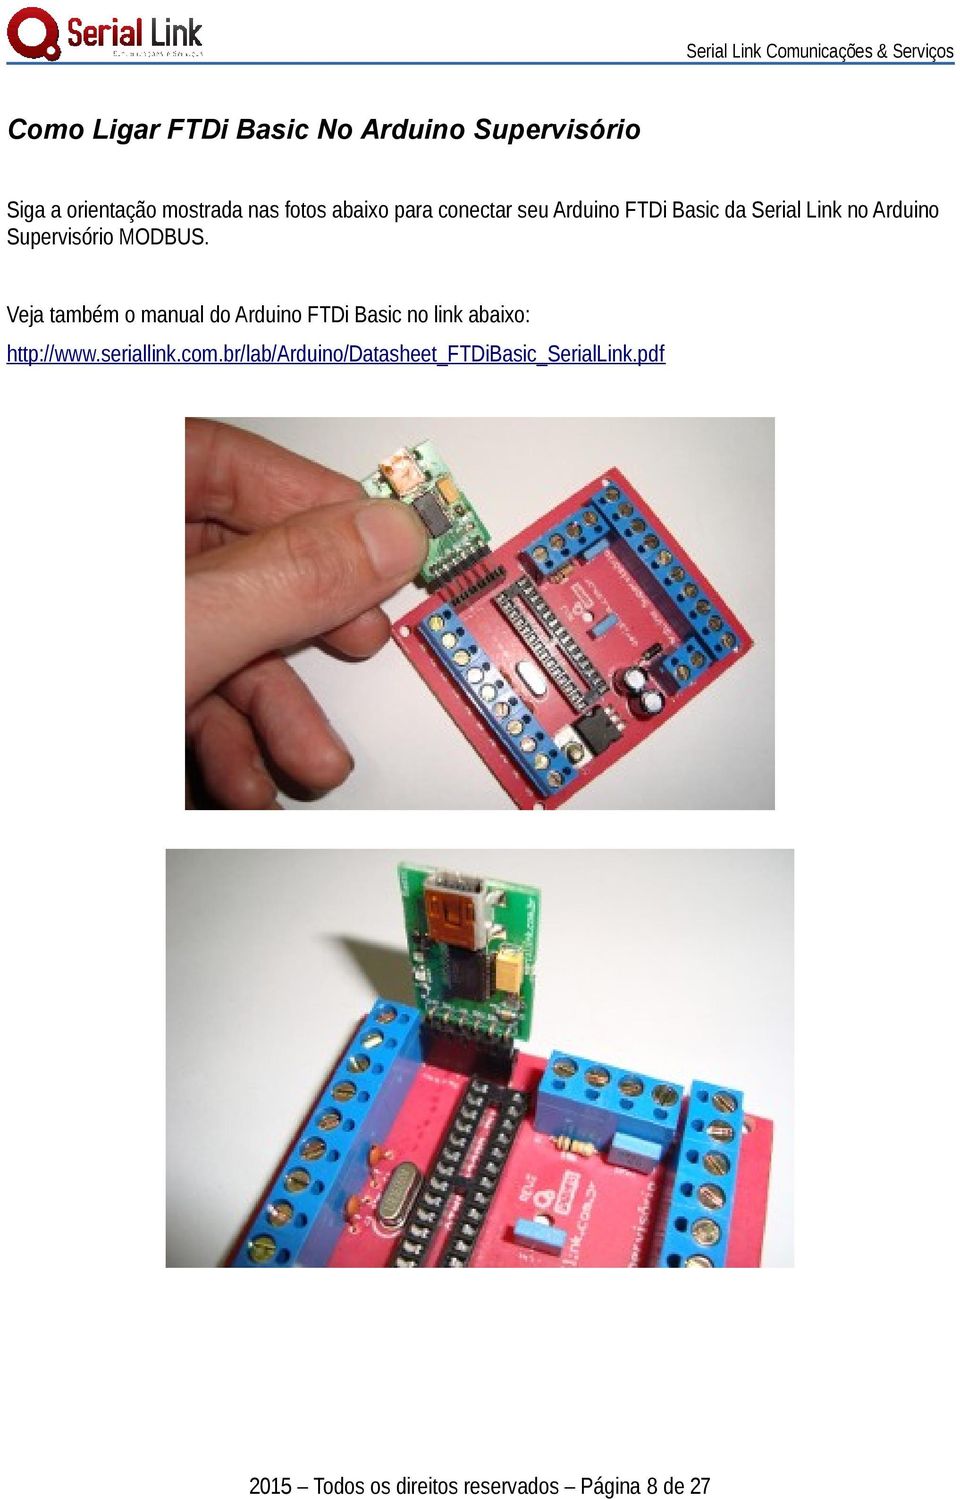 Veja também o manual do Arduino FTDi Basic no link abaixo: http://www.seriallink.com.